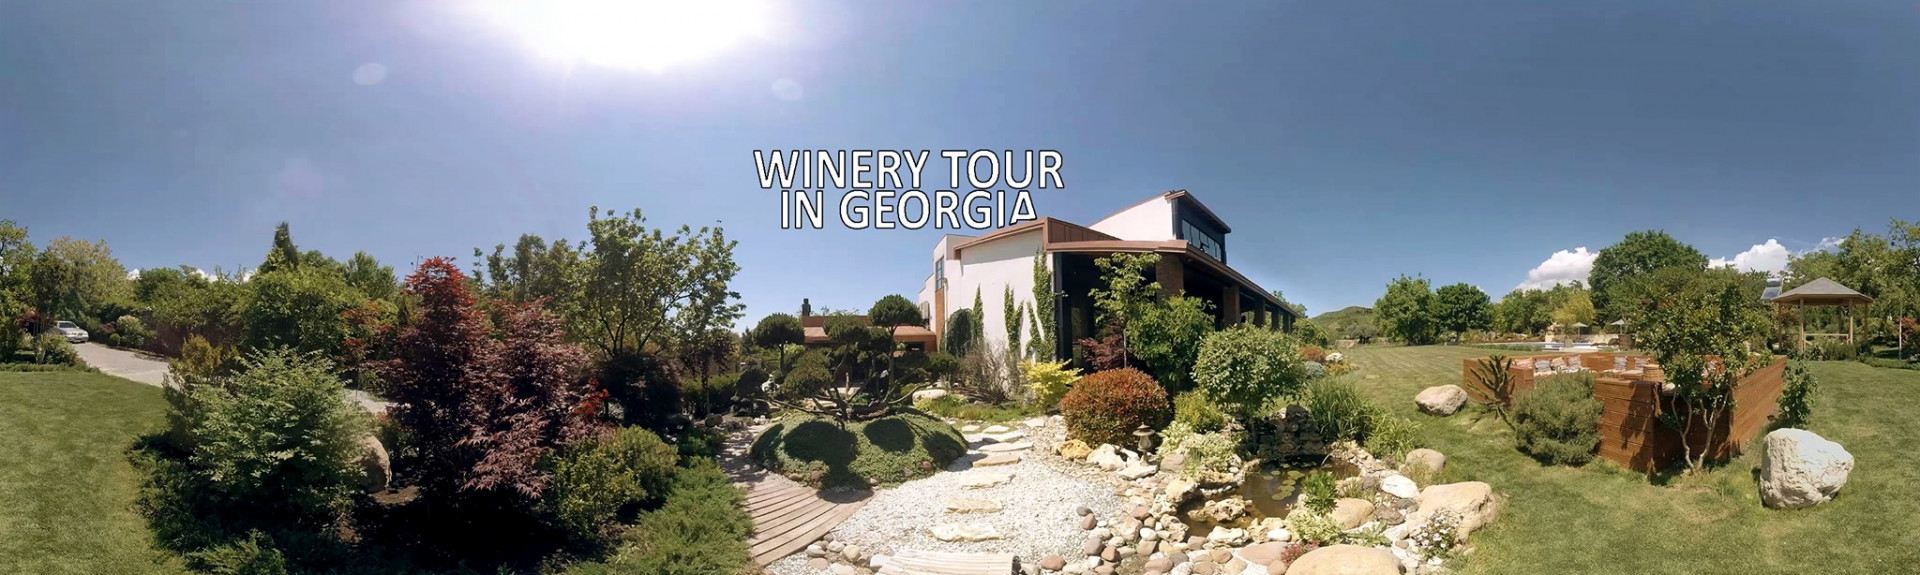 Winery Tour in Georgia